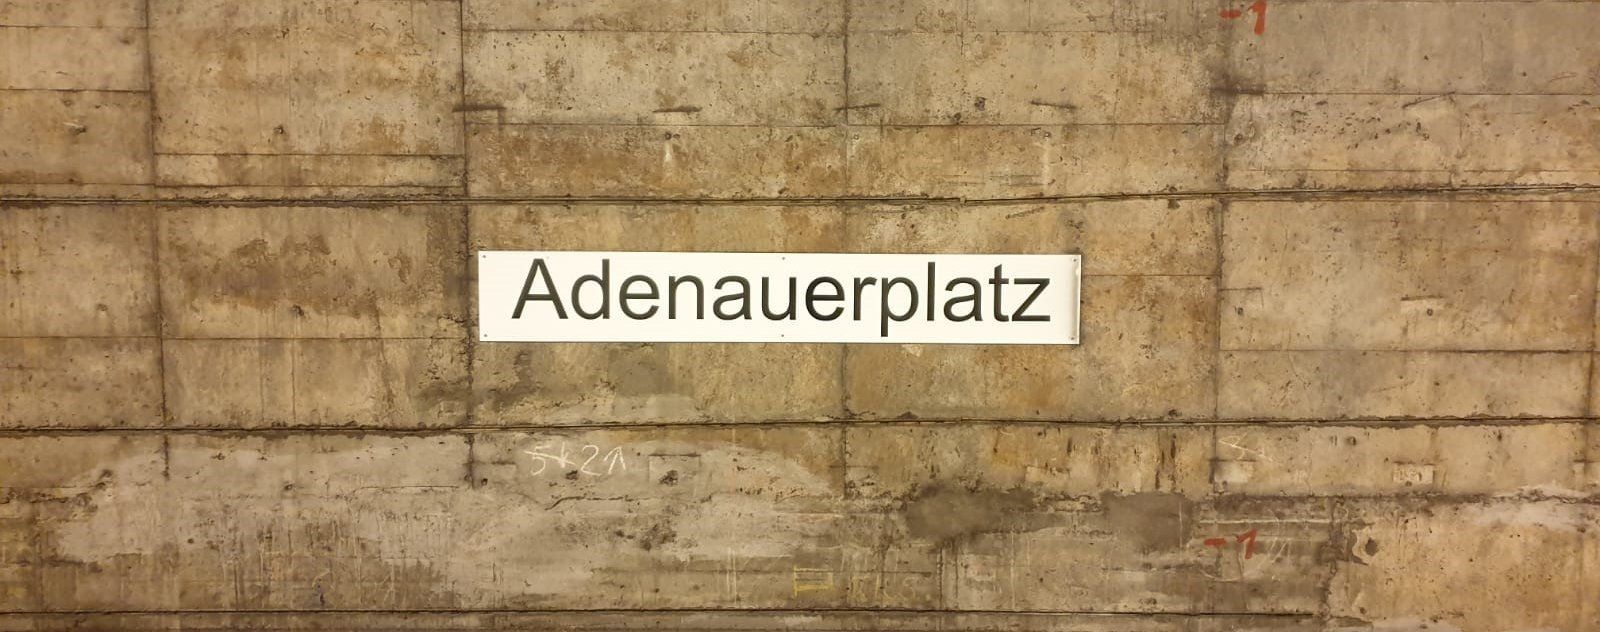 Bildvergrößerung: U7 Adenauerplatz